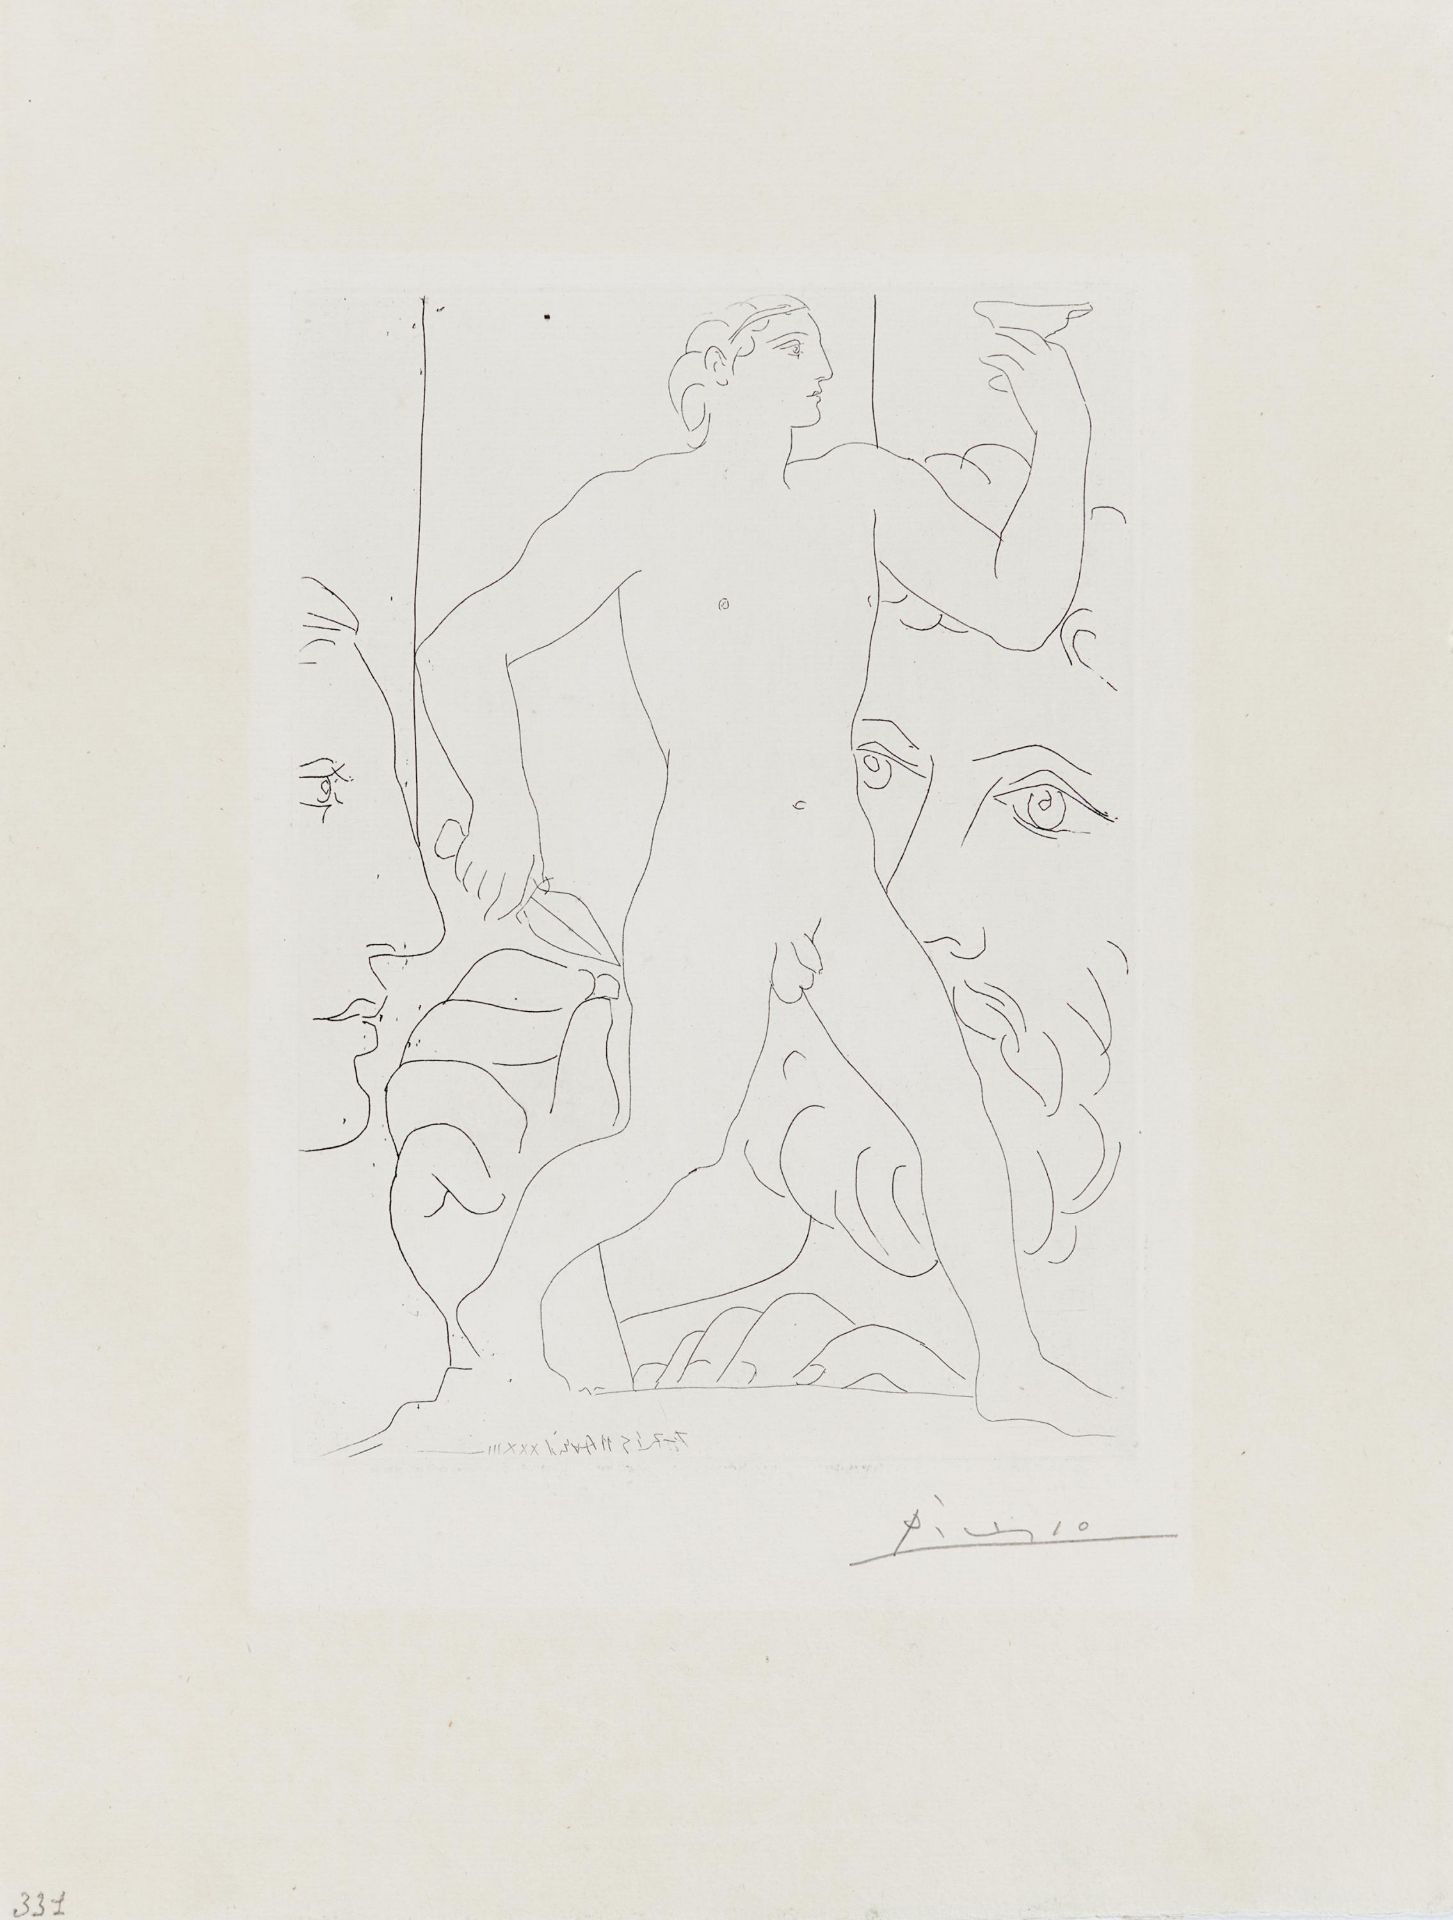 Picasso, Pablo1881 Malaga - 1973 MouginsMarie-Thérèse, sculpteur au travail et sculpture - Image 2 of 3